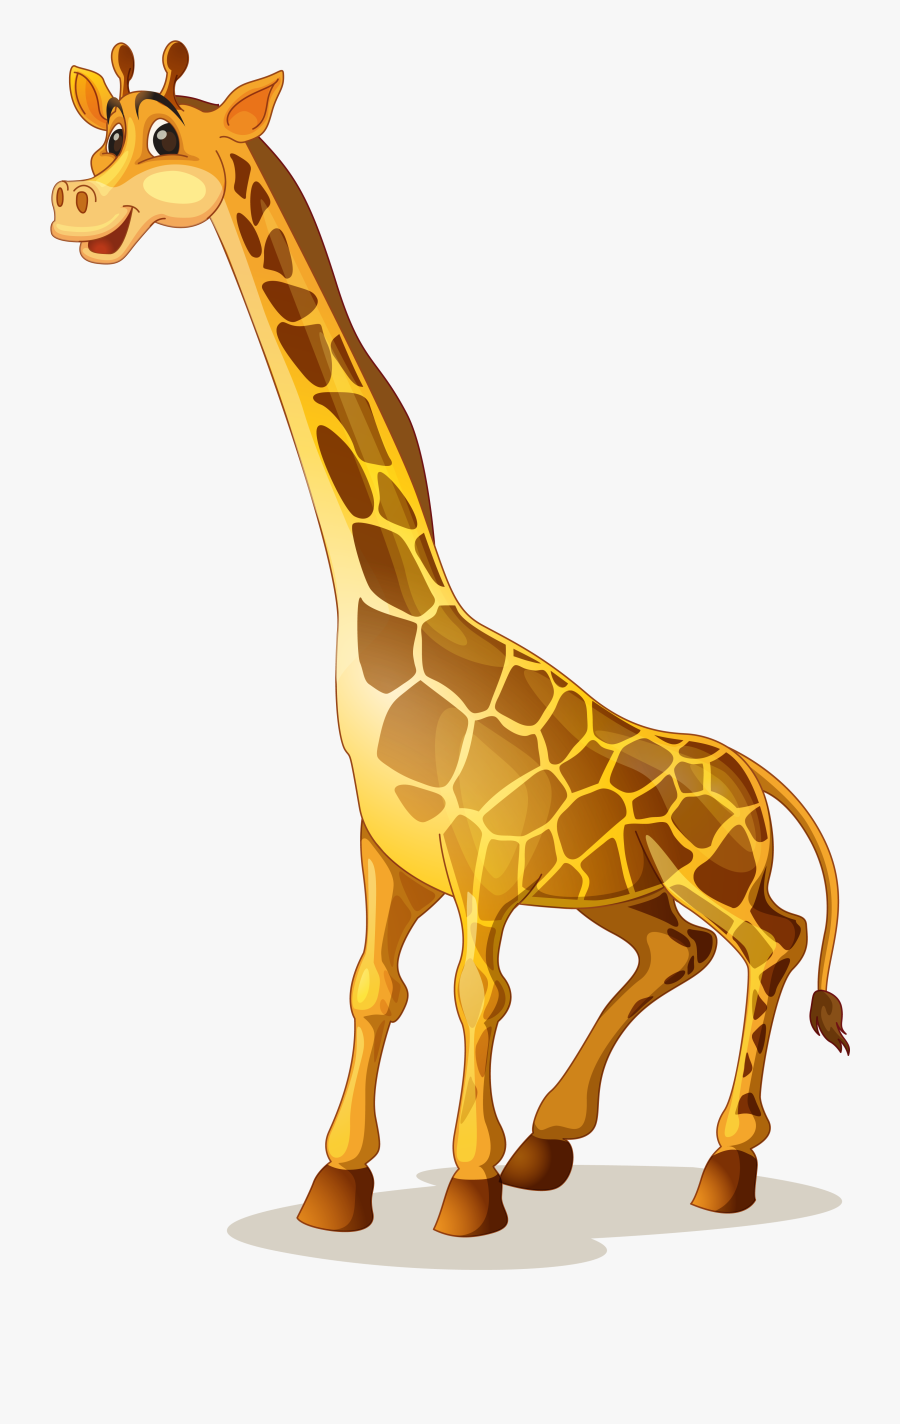 Giraffe Images Clipart - Giraffe Cliparts, Transparent Clipart